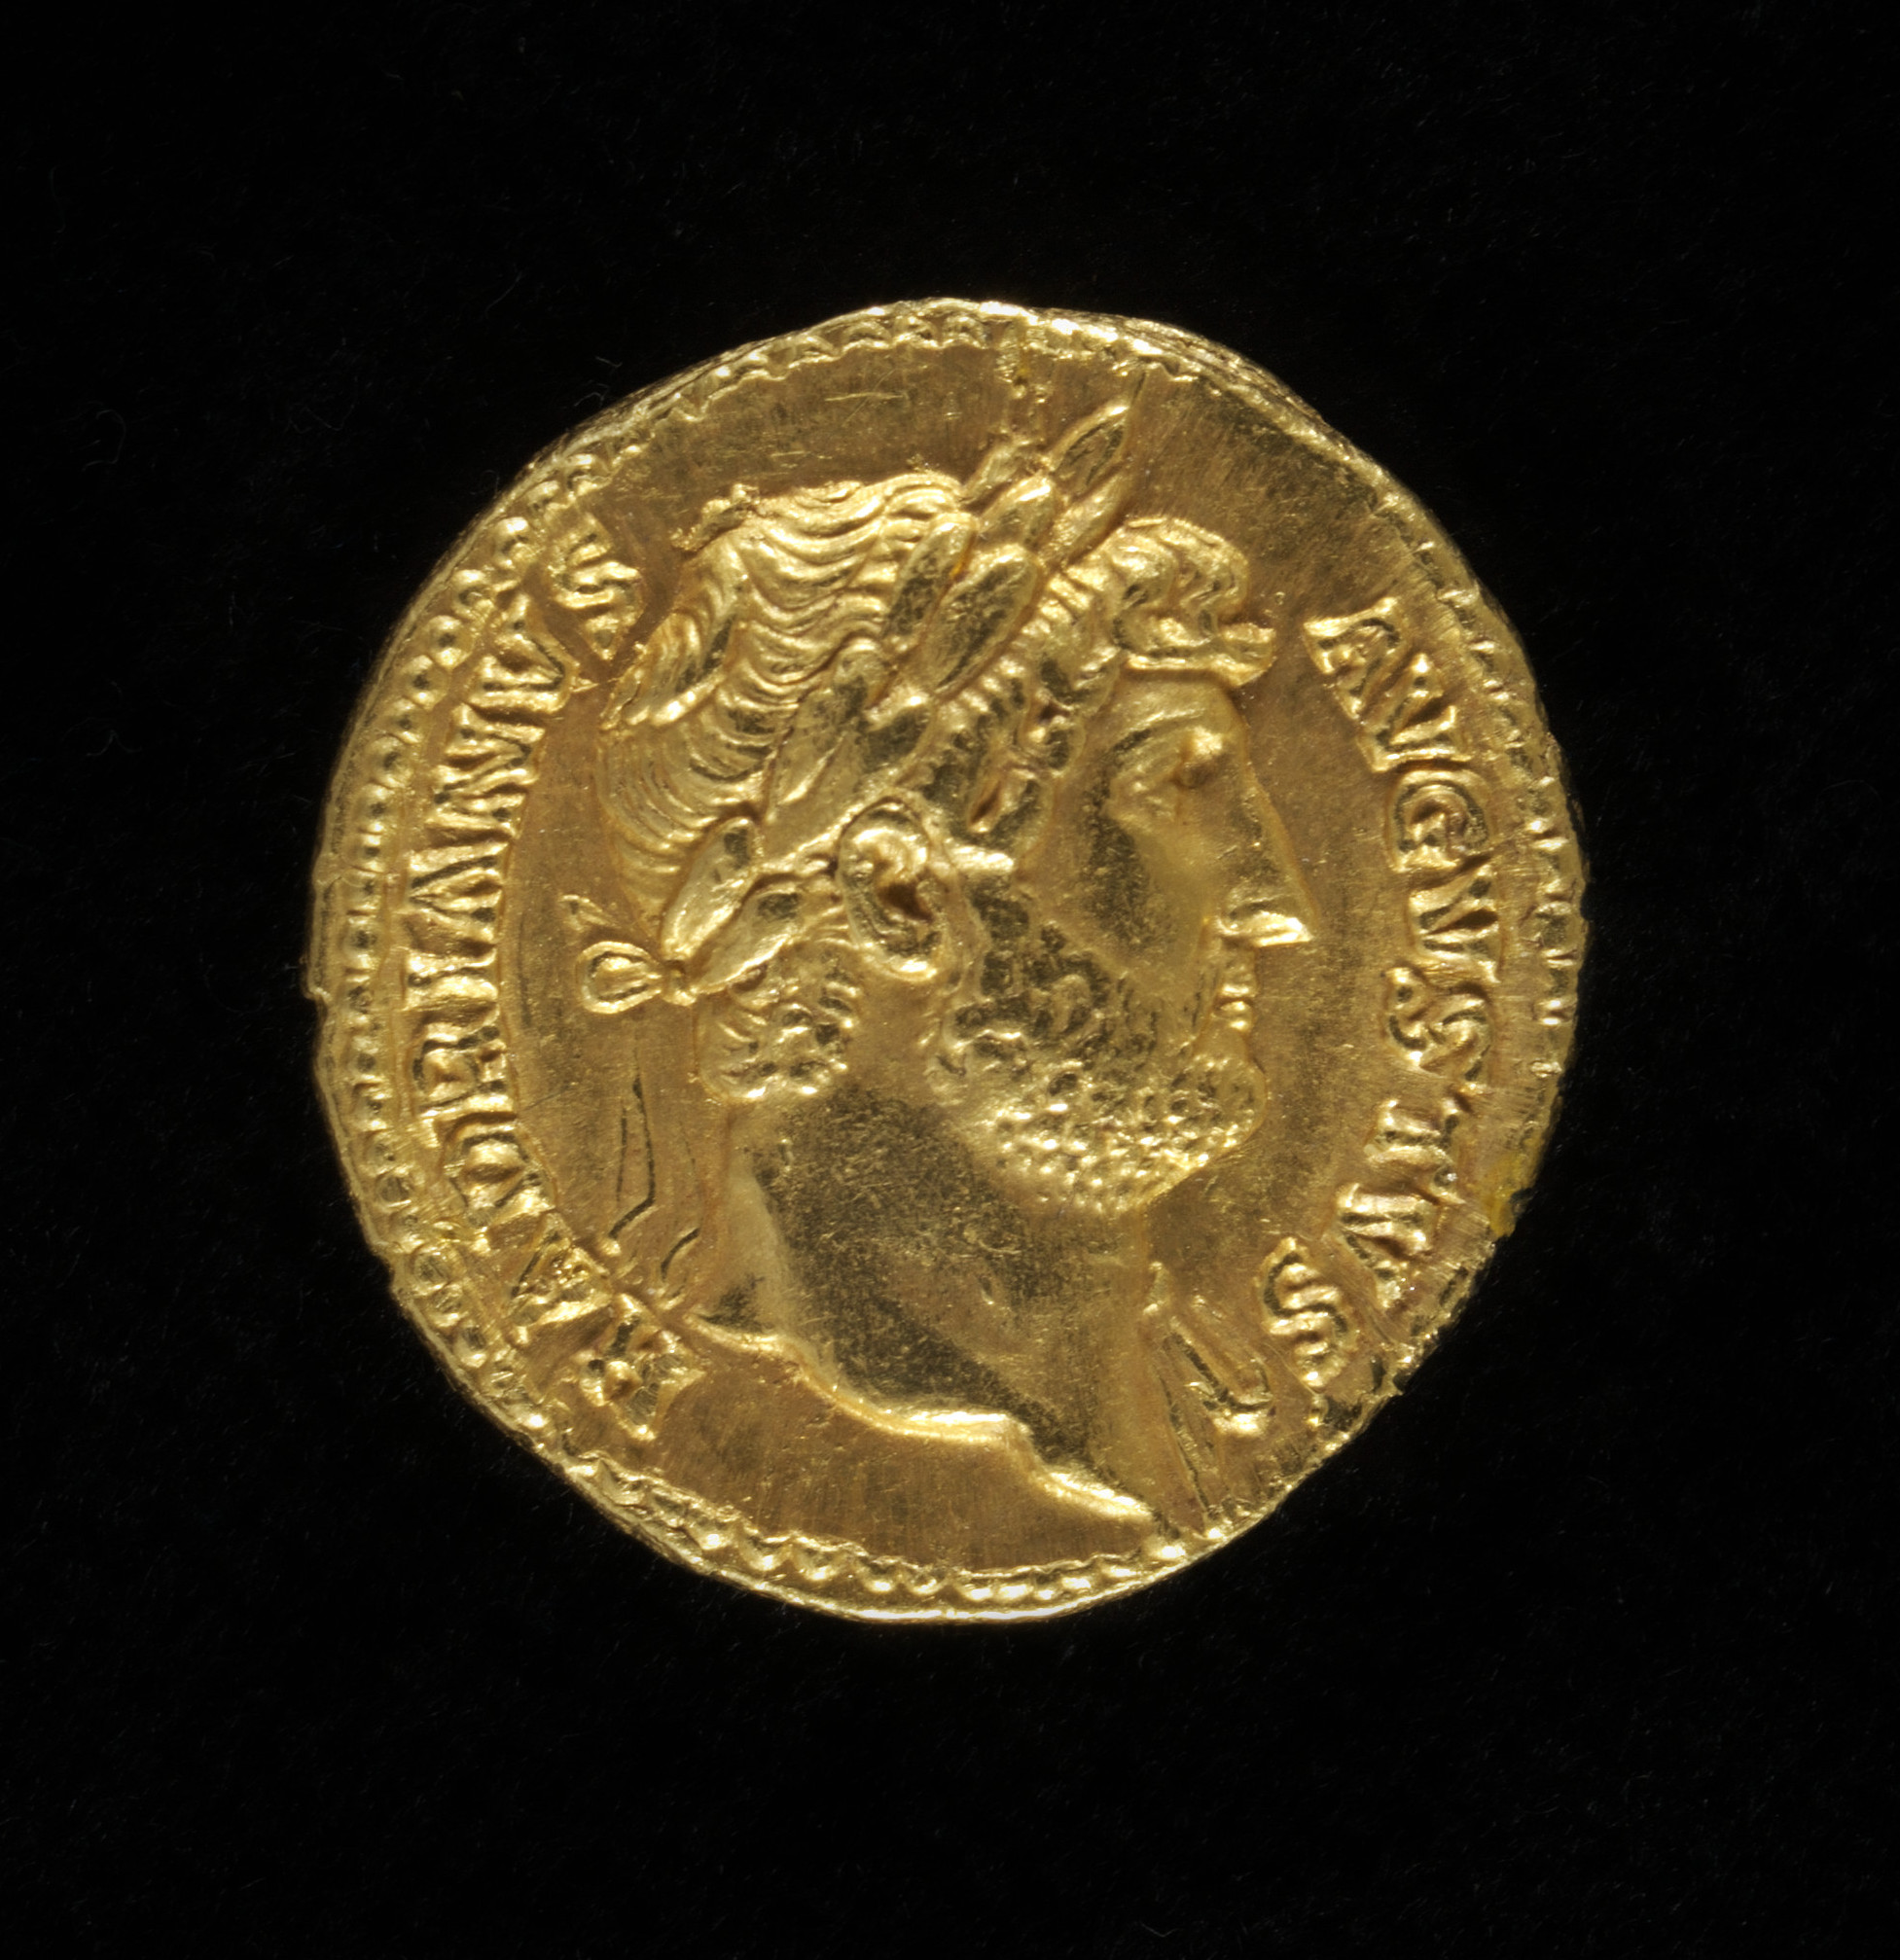 Aureus coin of Emperor Hadrian